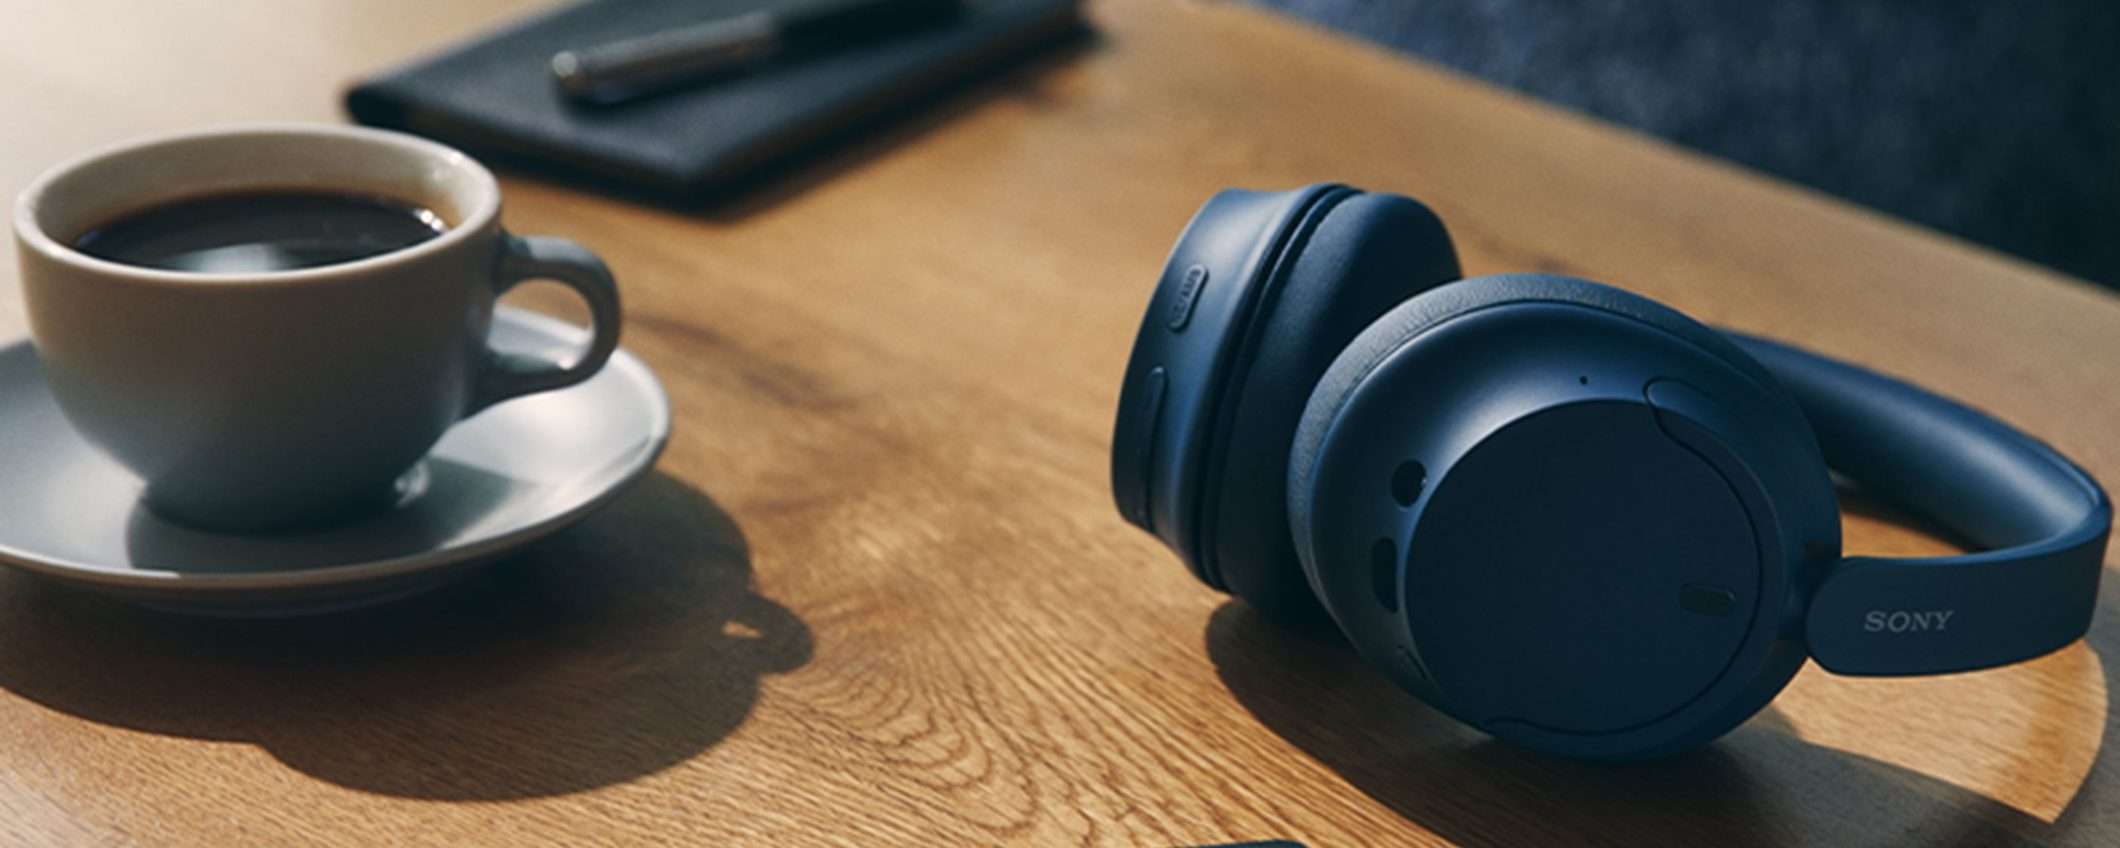 Cuffie Bluetooth Sony: 3 colorazioni, un unico grande sconto del 50%